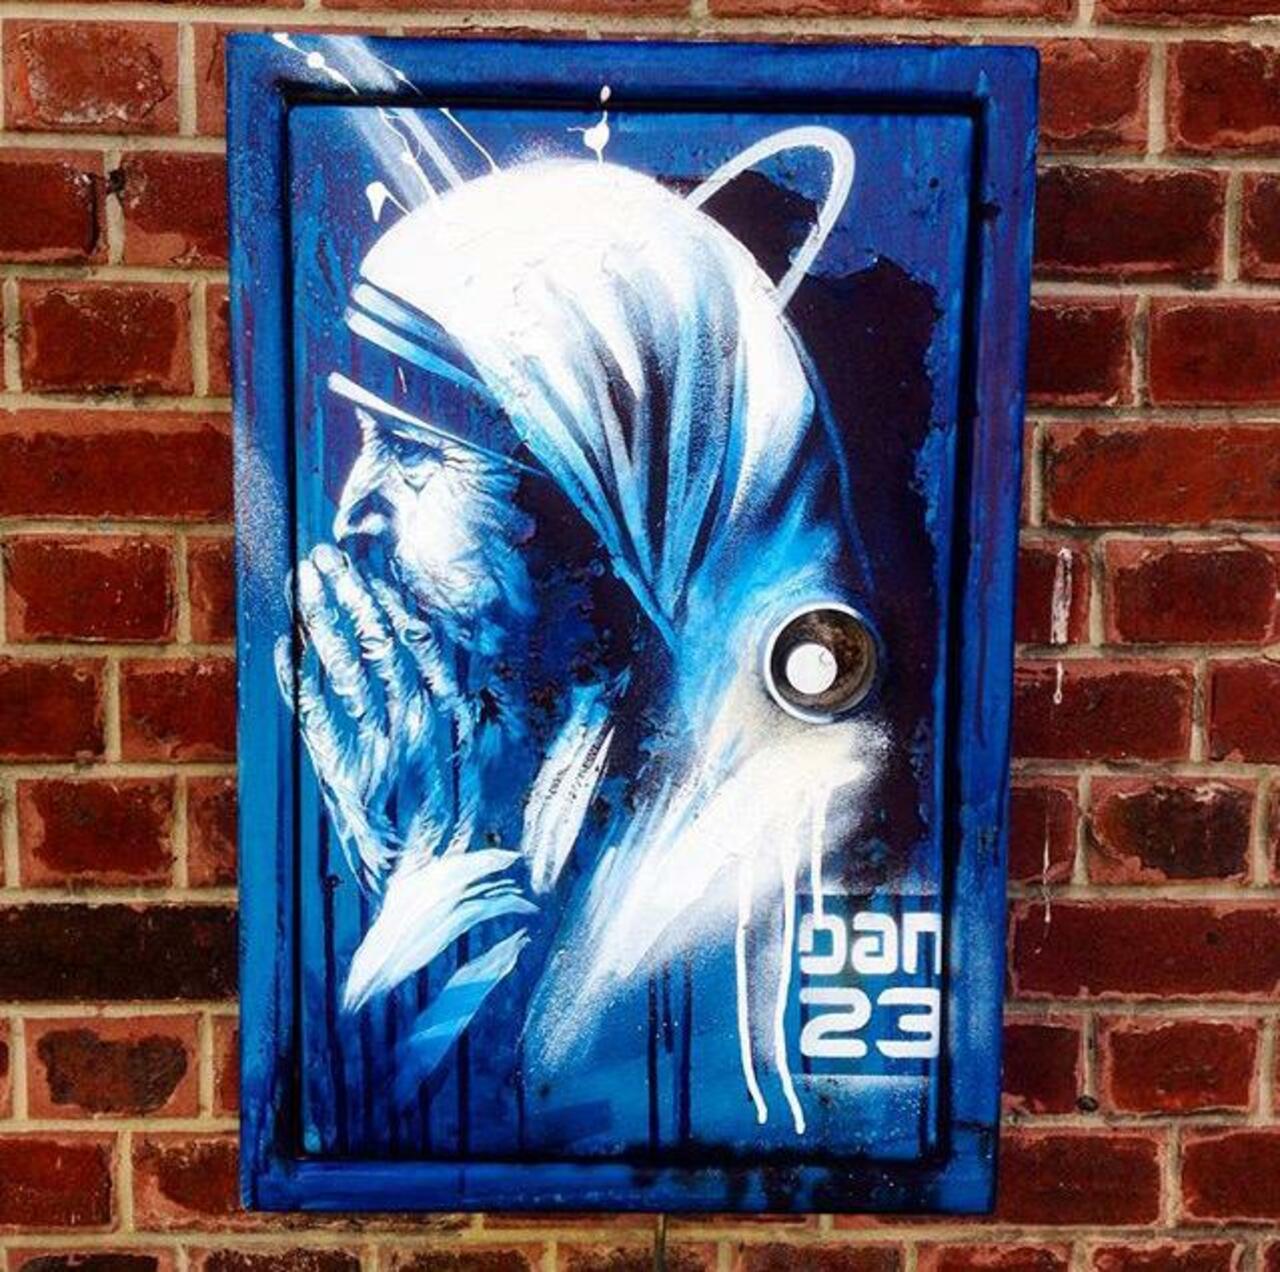 New Street Art 'Détail Spirit' by Dan23 

#art #graffiti #mural #streetart http://t.co/Np3KwHqG84